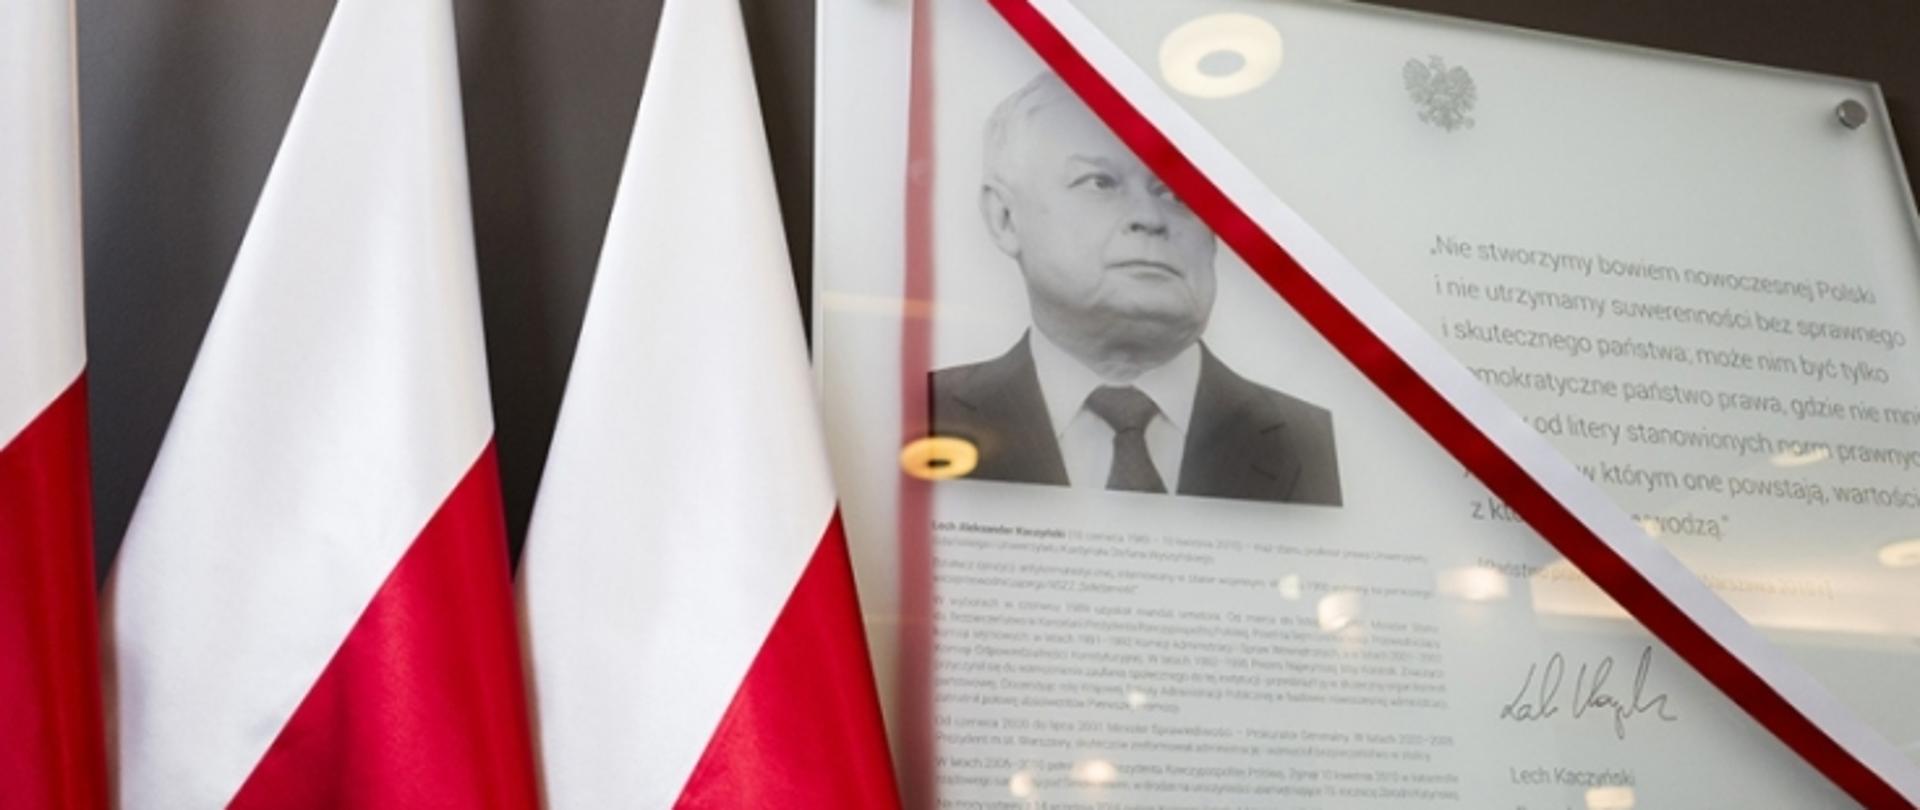 Tablica upamiętniąca patrona szkoły - śp. Prezydenta Rzeczypospolitej Polskiej Lecha Kaczyńskiego